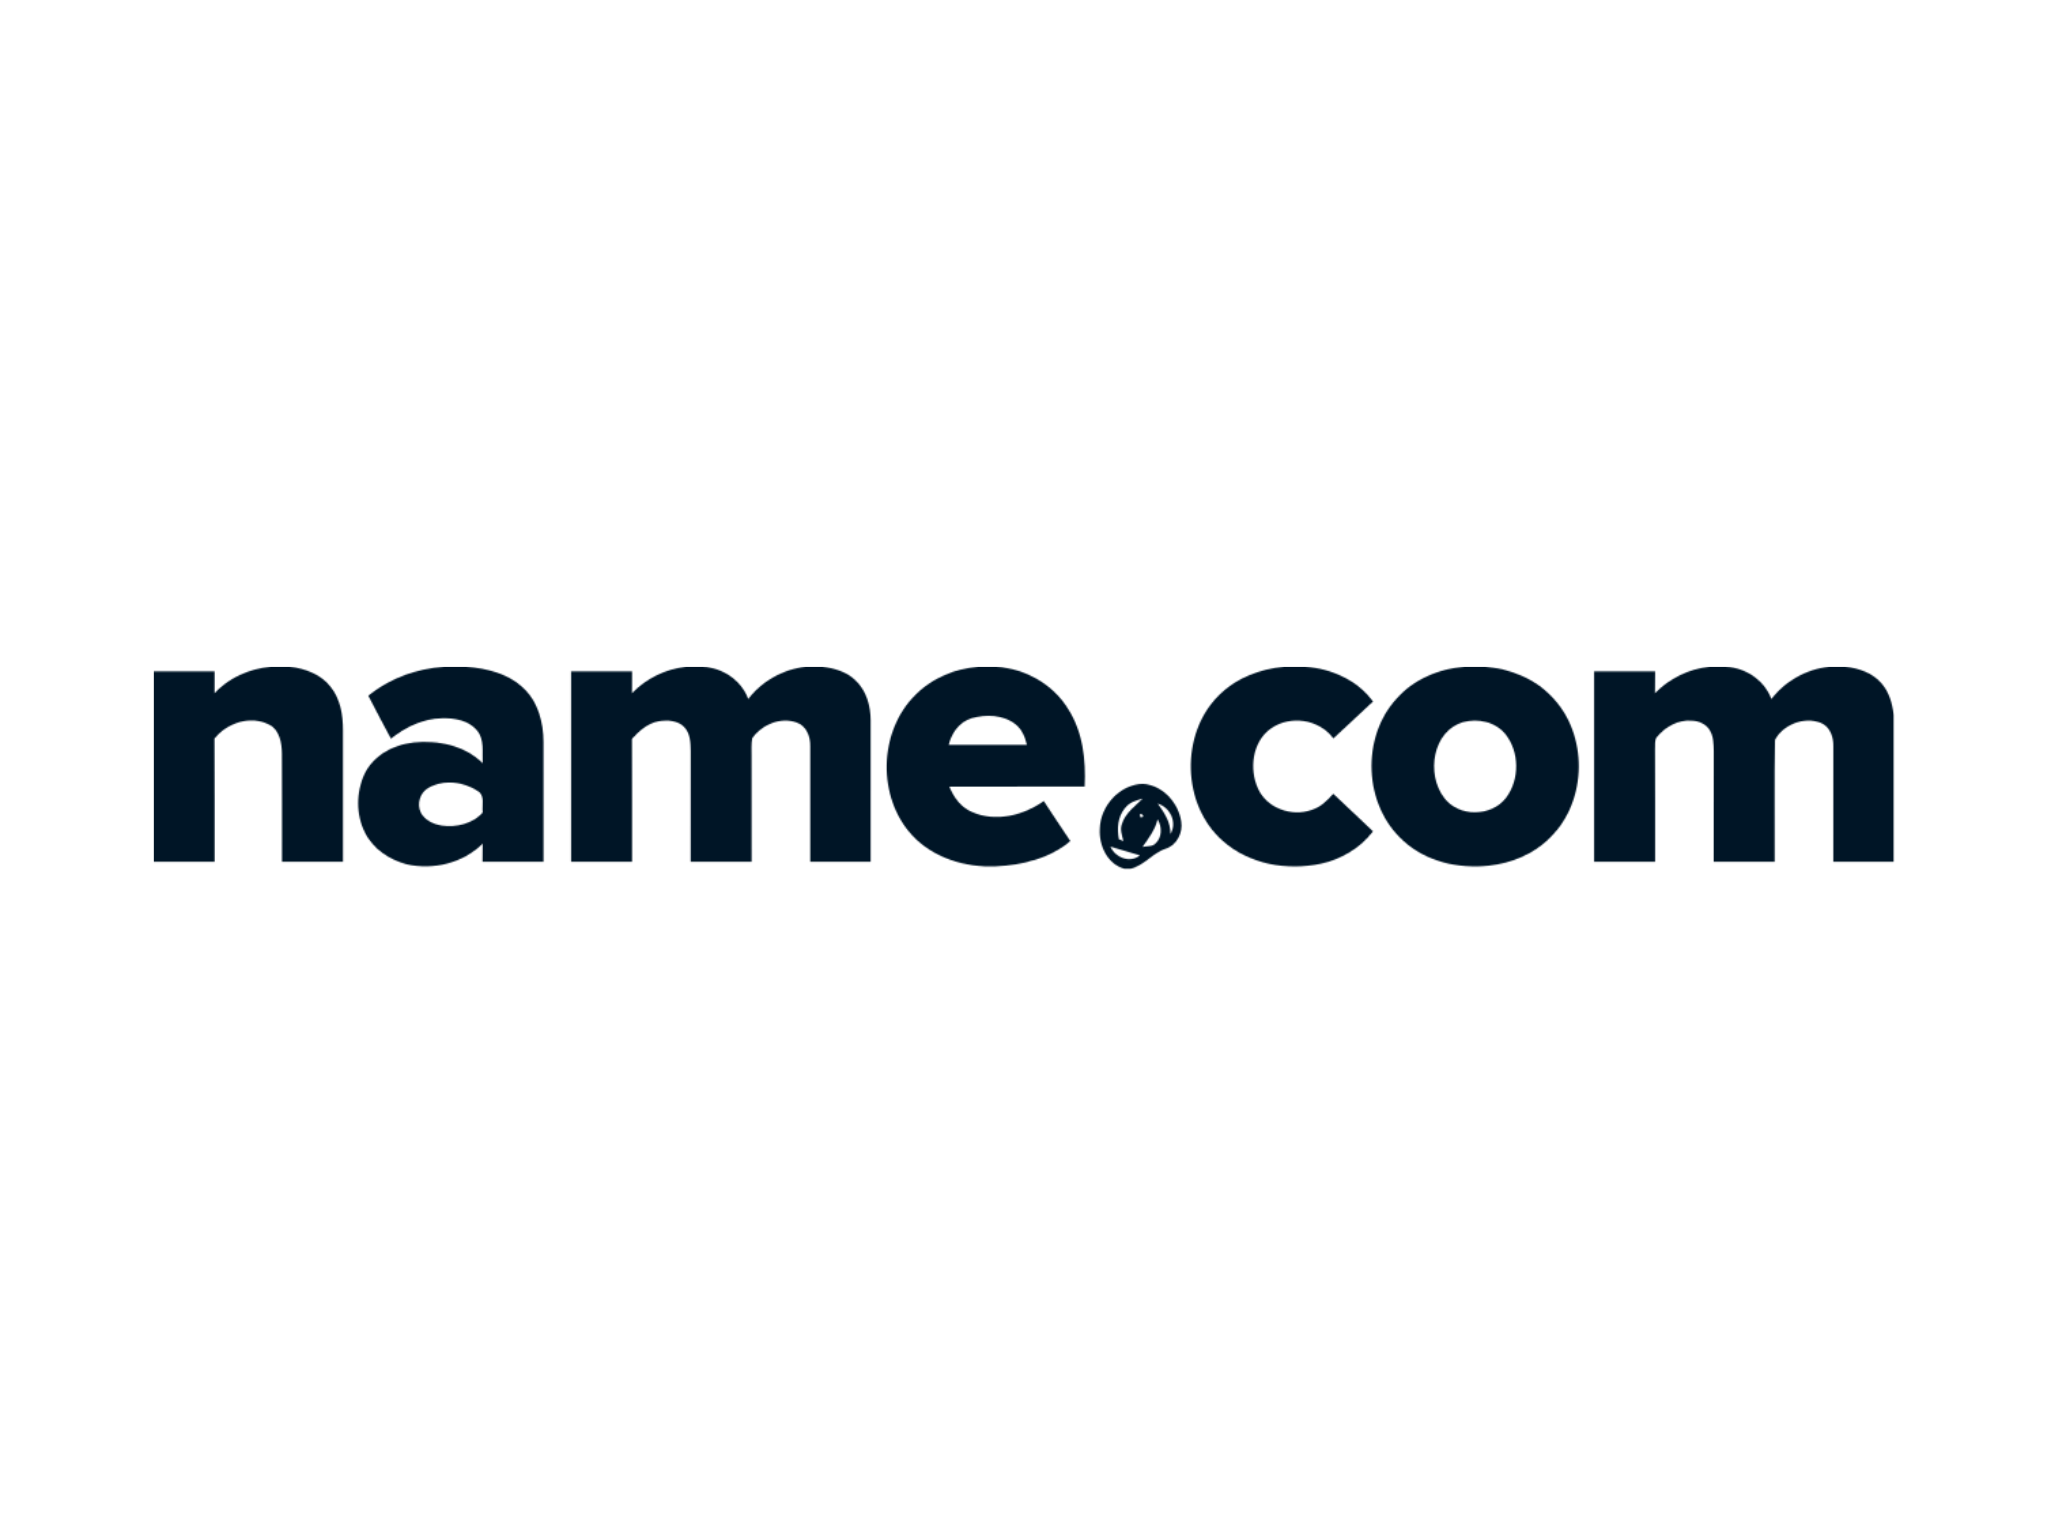 Dark name.com logo on transparent background